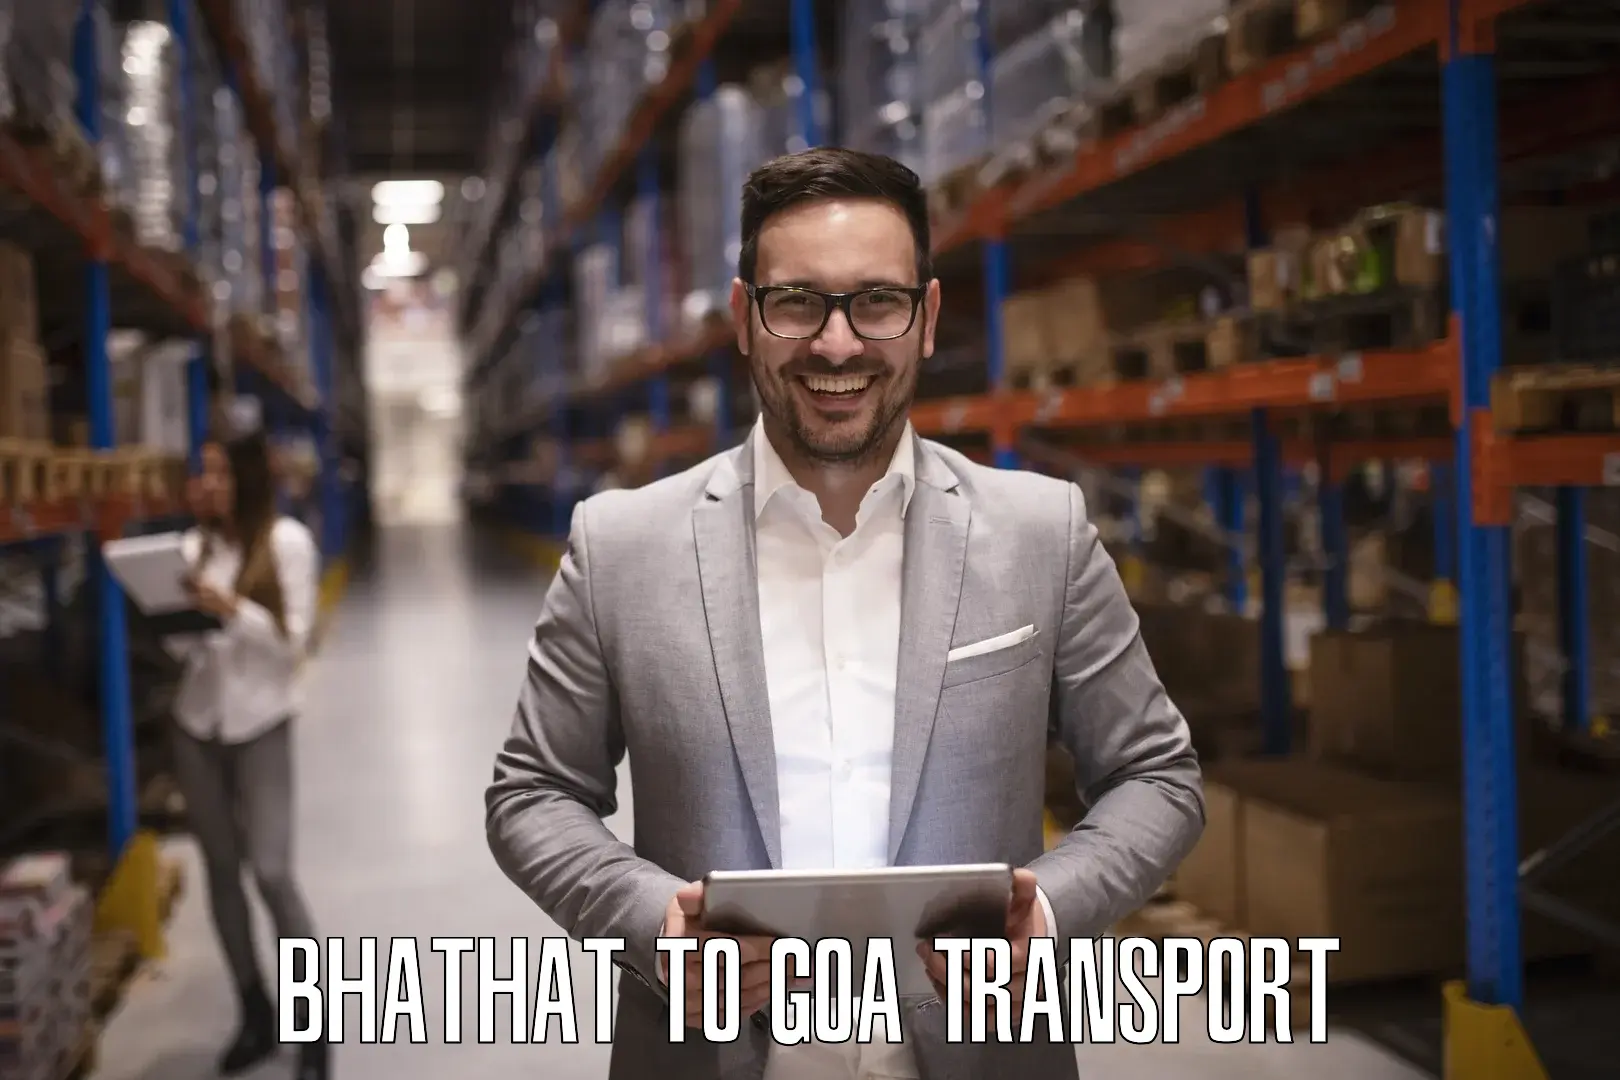 Bike transfer Bhathat to Goa